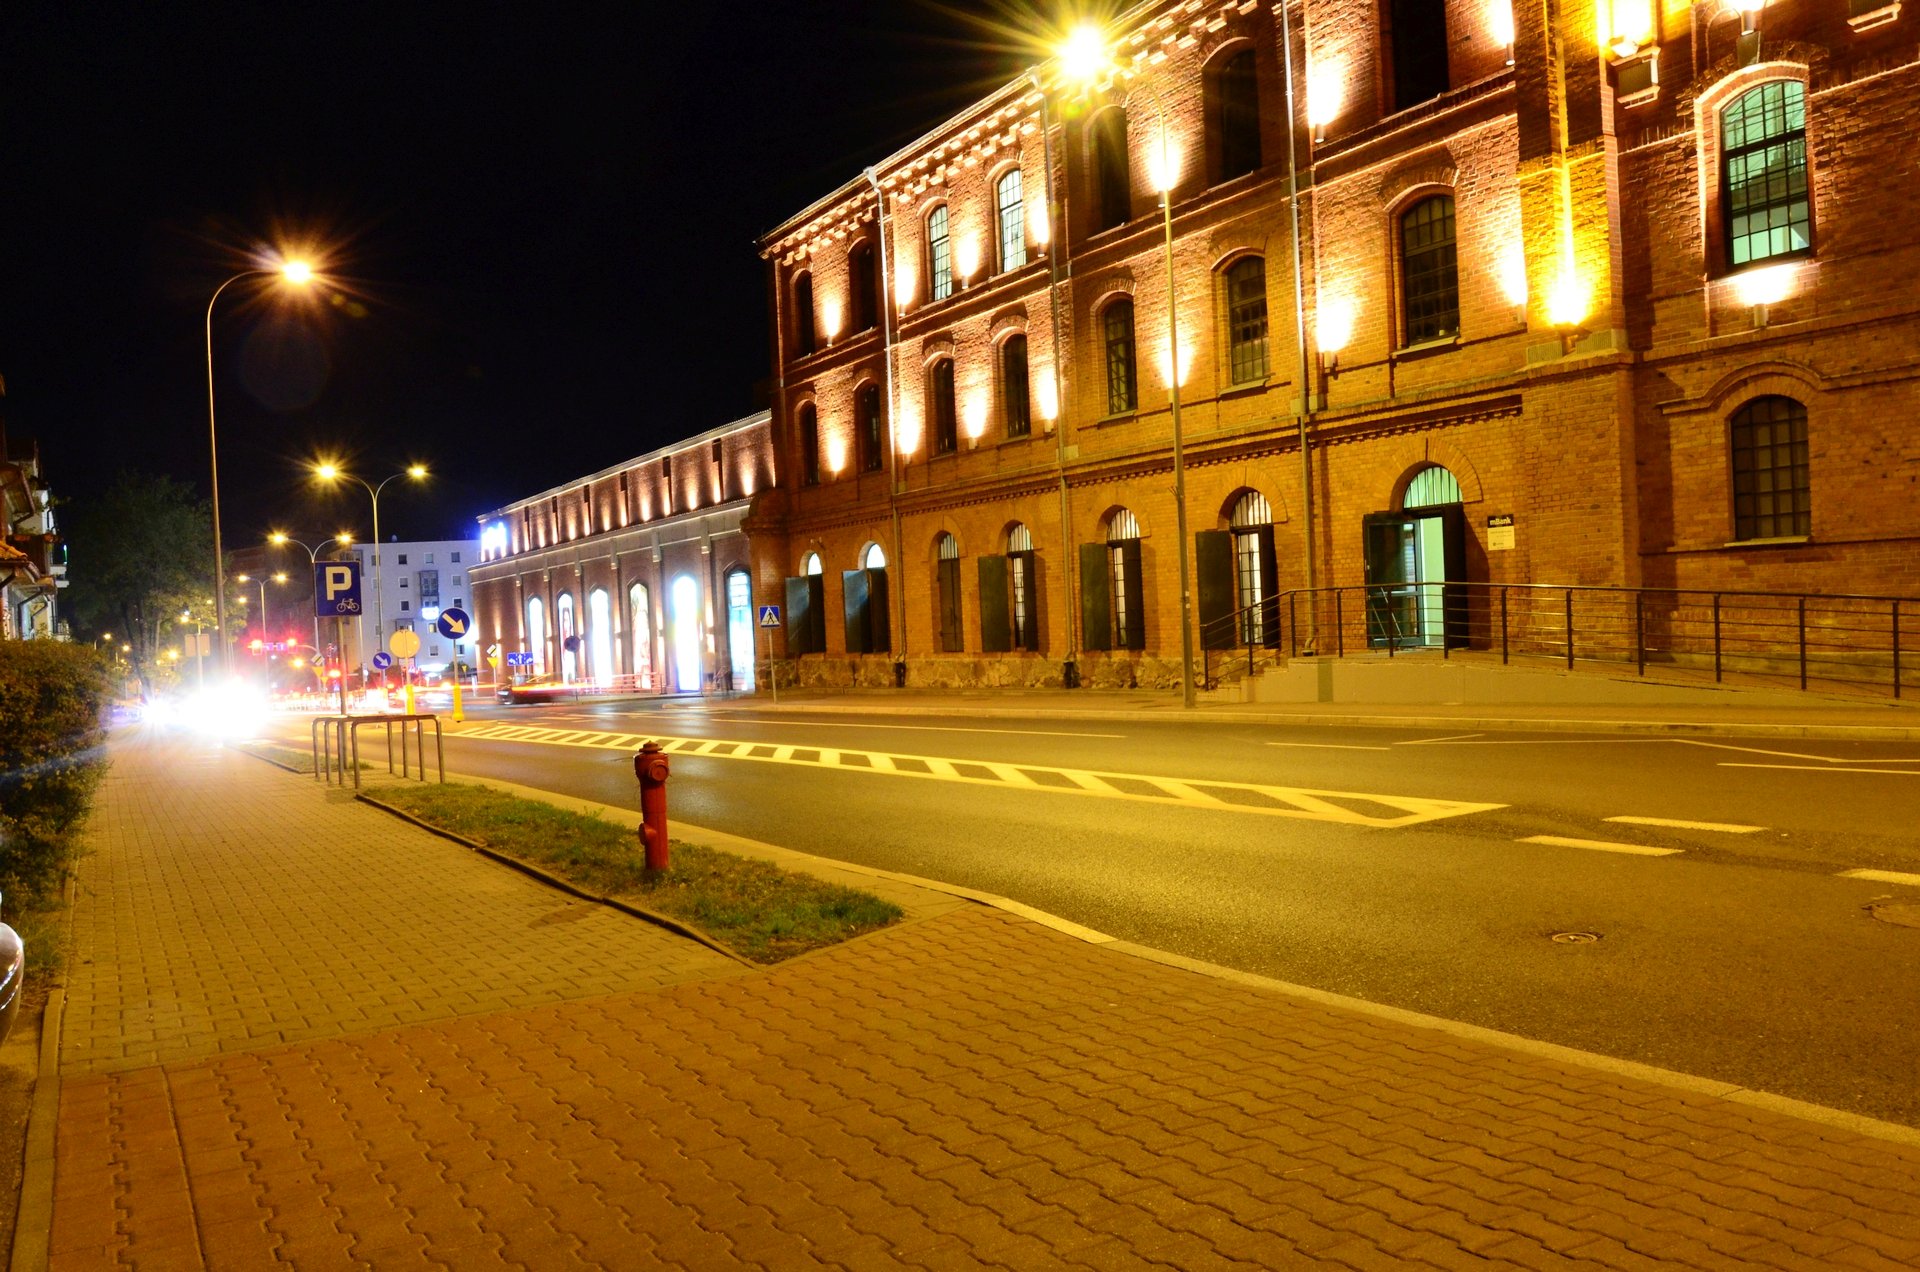 Białystok centrum noc nocą Galeria Alfa Świętojańskafree photo darmowe zdjęcie